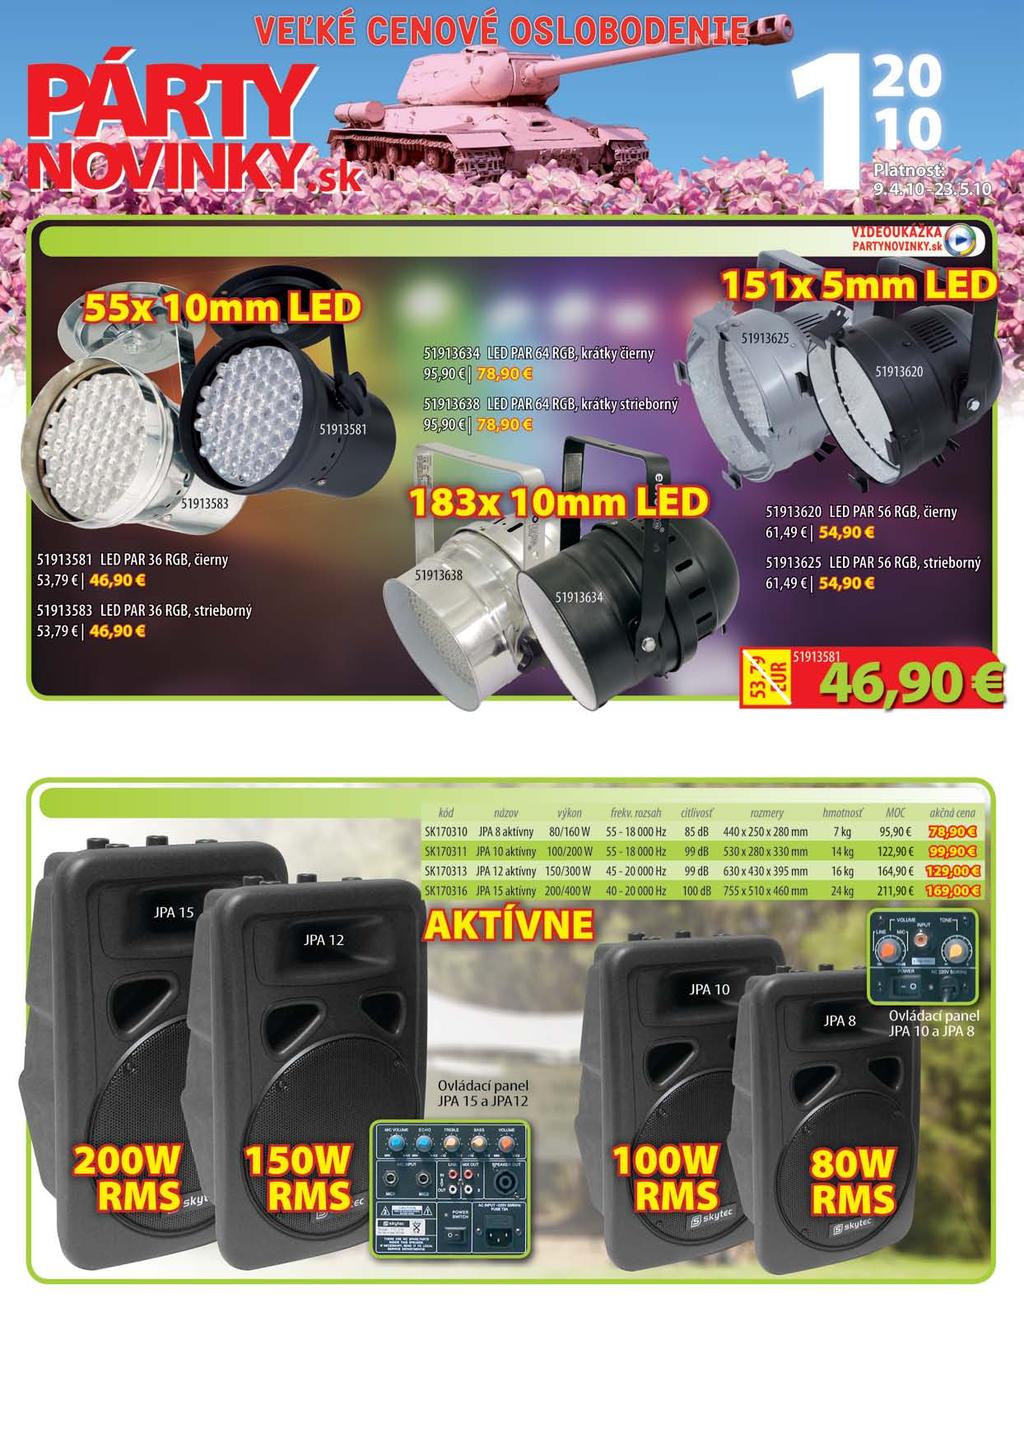 Eurolite LED PAR reflektory PAR 36 RGB: 5 kanálov DMX, vyžarovací uhol 30, príkon 12 W. PAR 56 RGB: 6 kanálov DMX, vyžarovací uhol 45, spotreba 20 W.